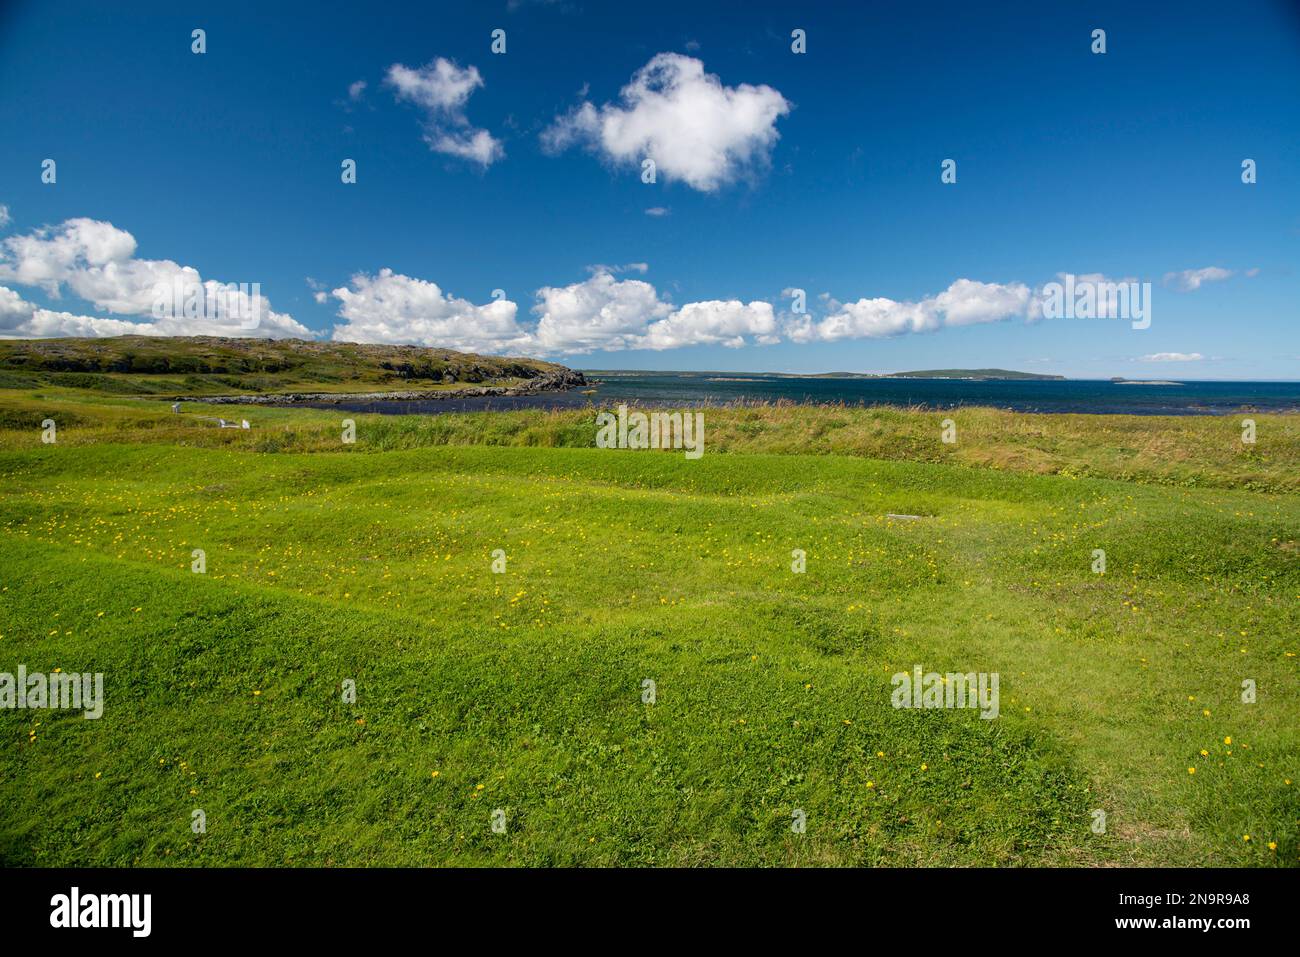 Delinea e tumuli nell'erba che contengono un antico sito di costruzione vichinga; l'Anse aux Meadows, Terranova e Labrador, Canada Foto Stock